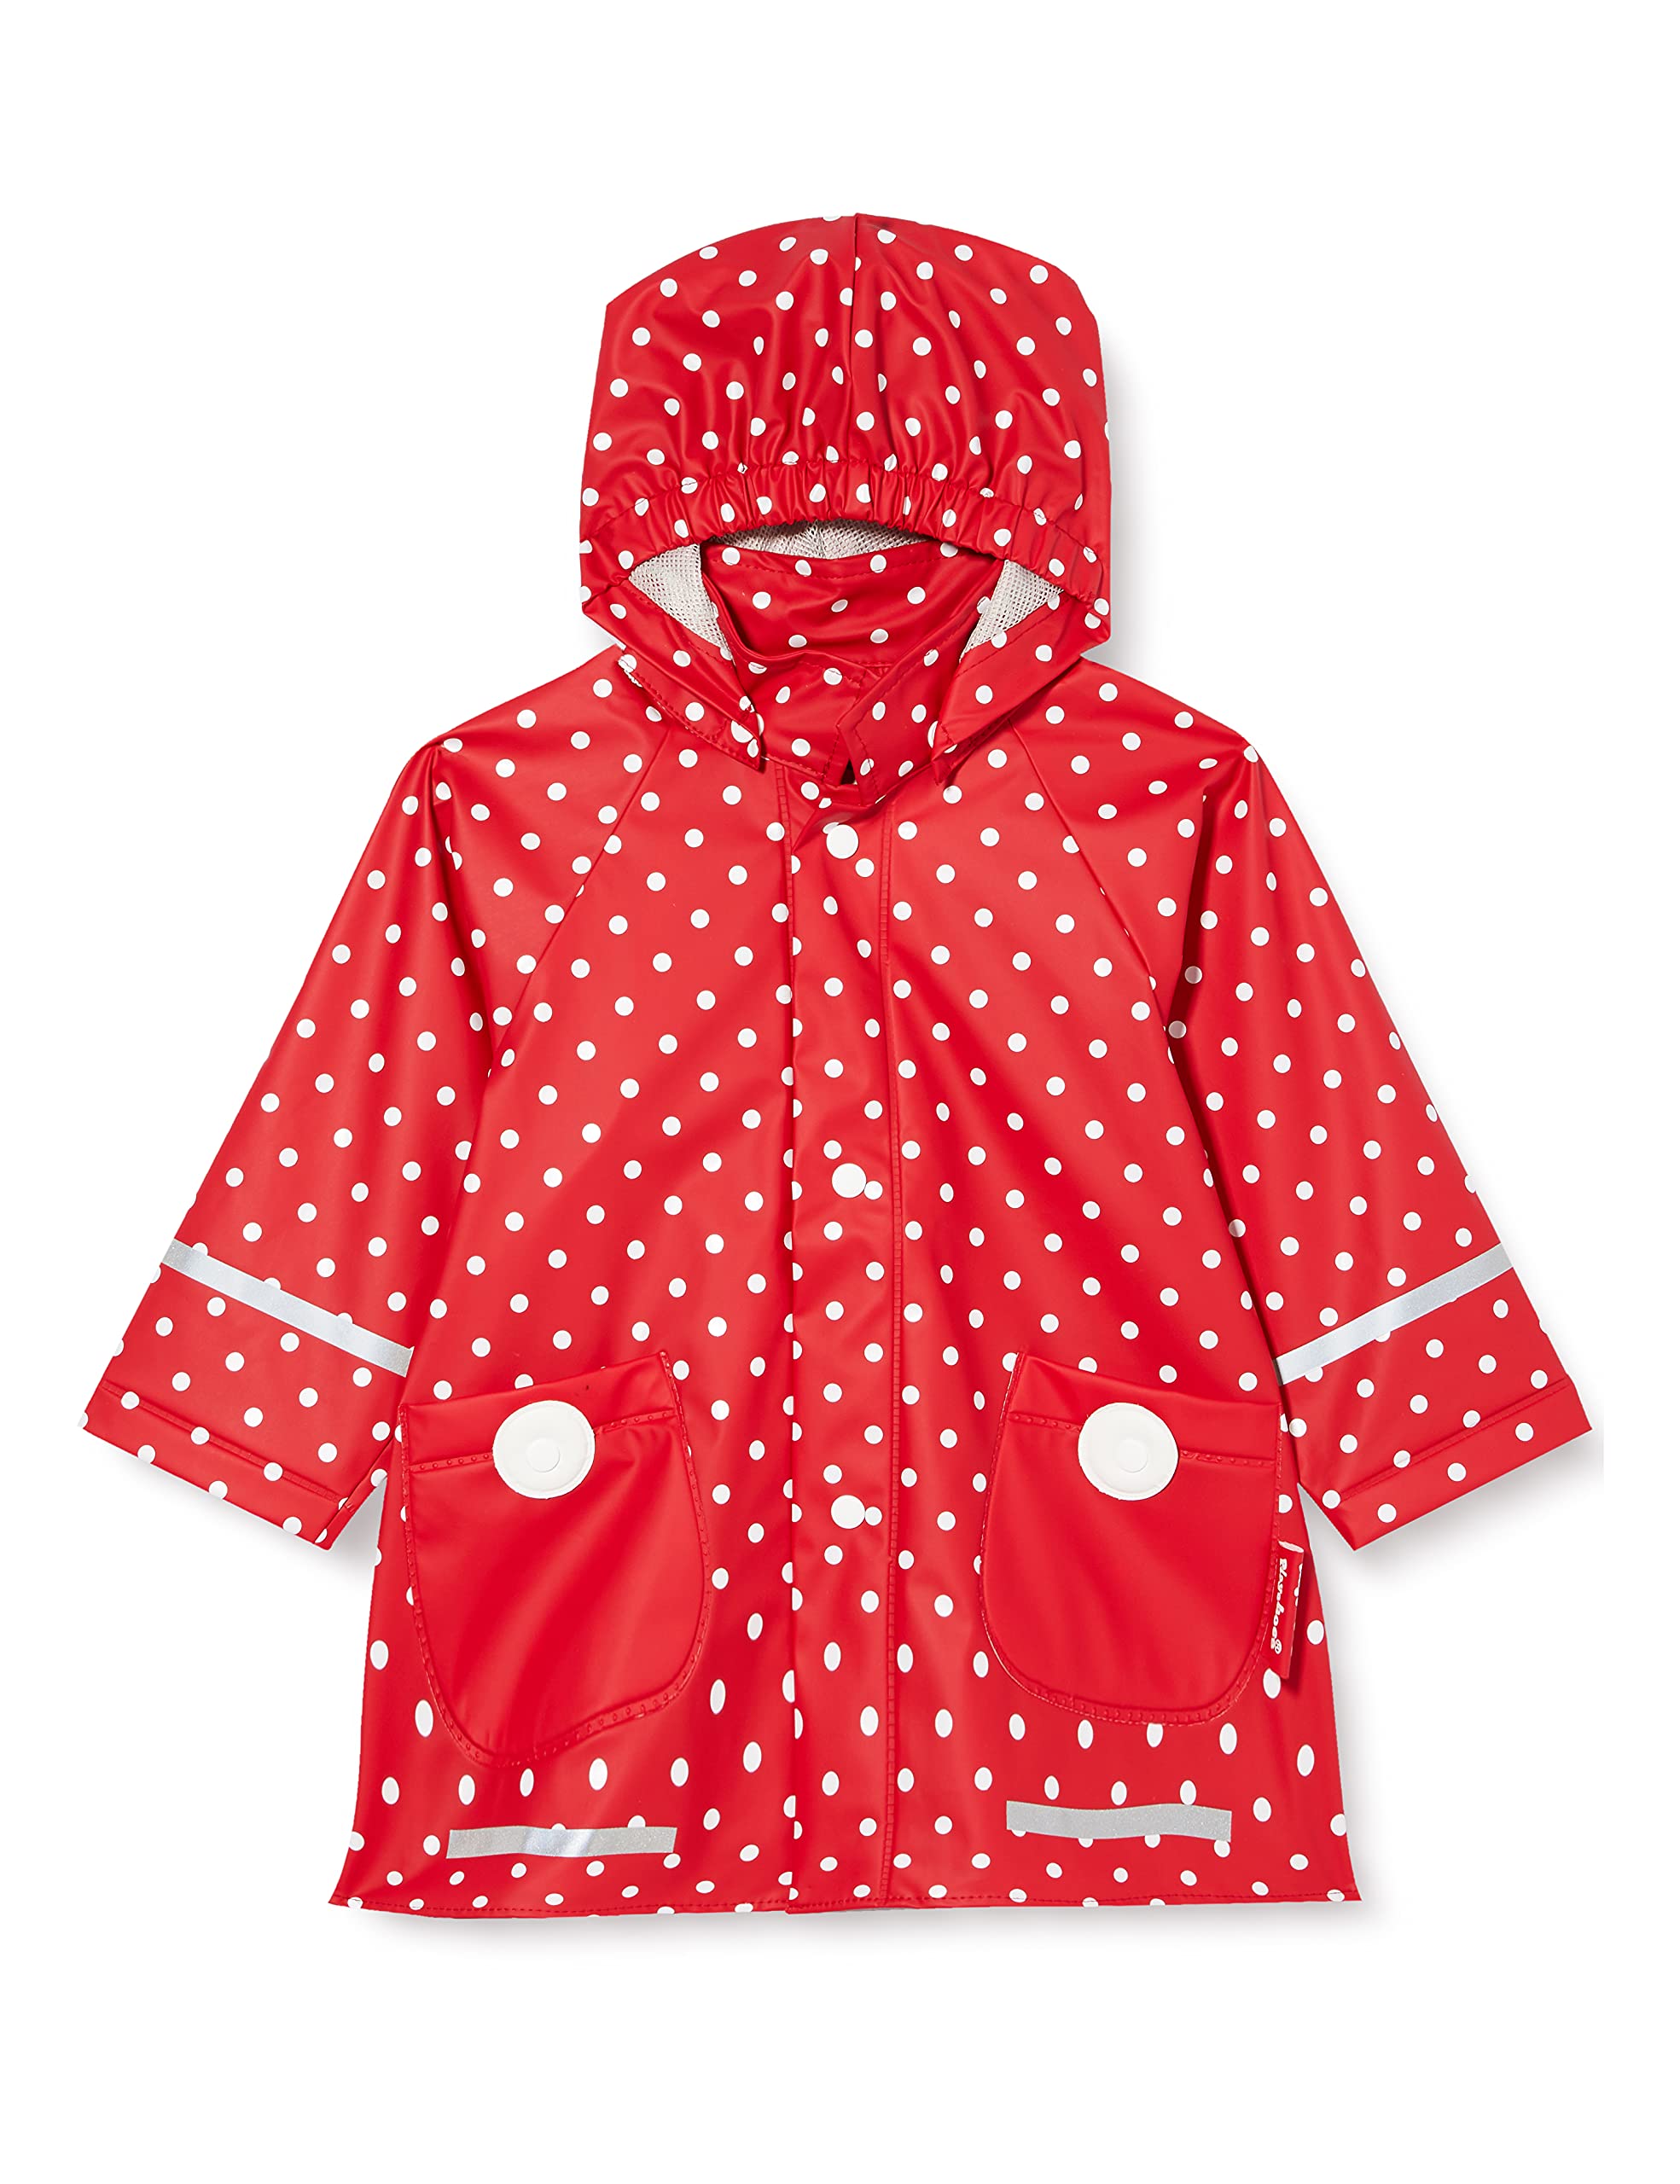 Playshoes Wind- und wasserdicht Regenmantel Regenbekleidung Unisex Kinder,rot Punkte,92